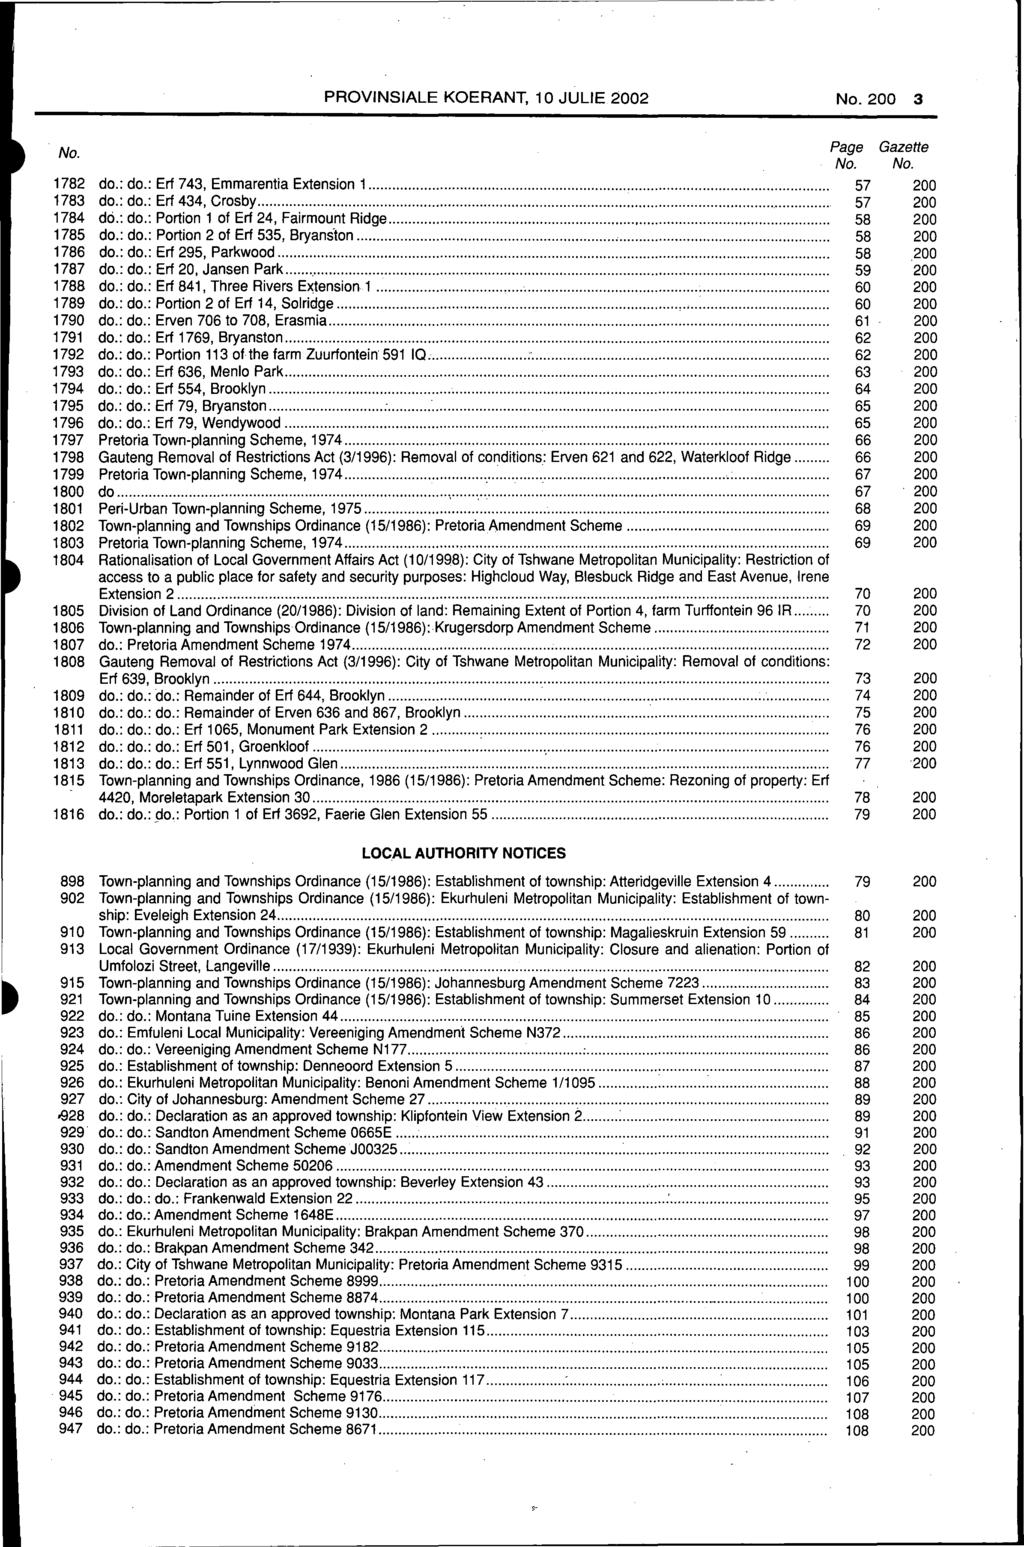 PROVINSIALE KOERANT, 10 JULIE 2002 No. 200 3 No. Page Gazette No. No. 1782 do.: do.: Erf 743, Emmarentia Extension 1... 57 200 1783 do.: do.: Erf 434, Crosby... 57 200 1784 dci.: do.: Portion 1 of Erf 24, Fairmount Ridge.